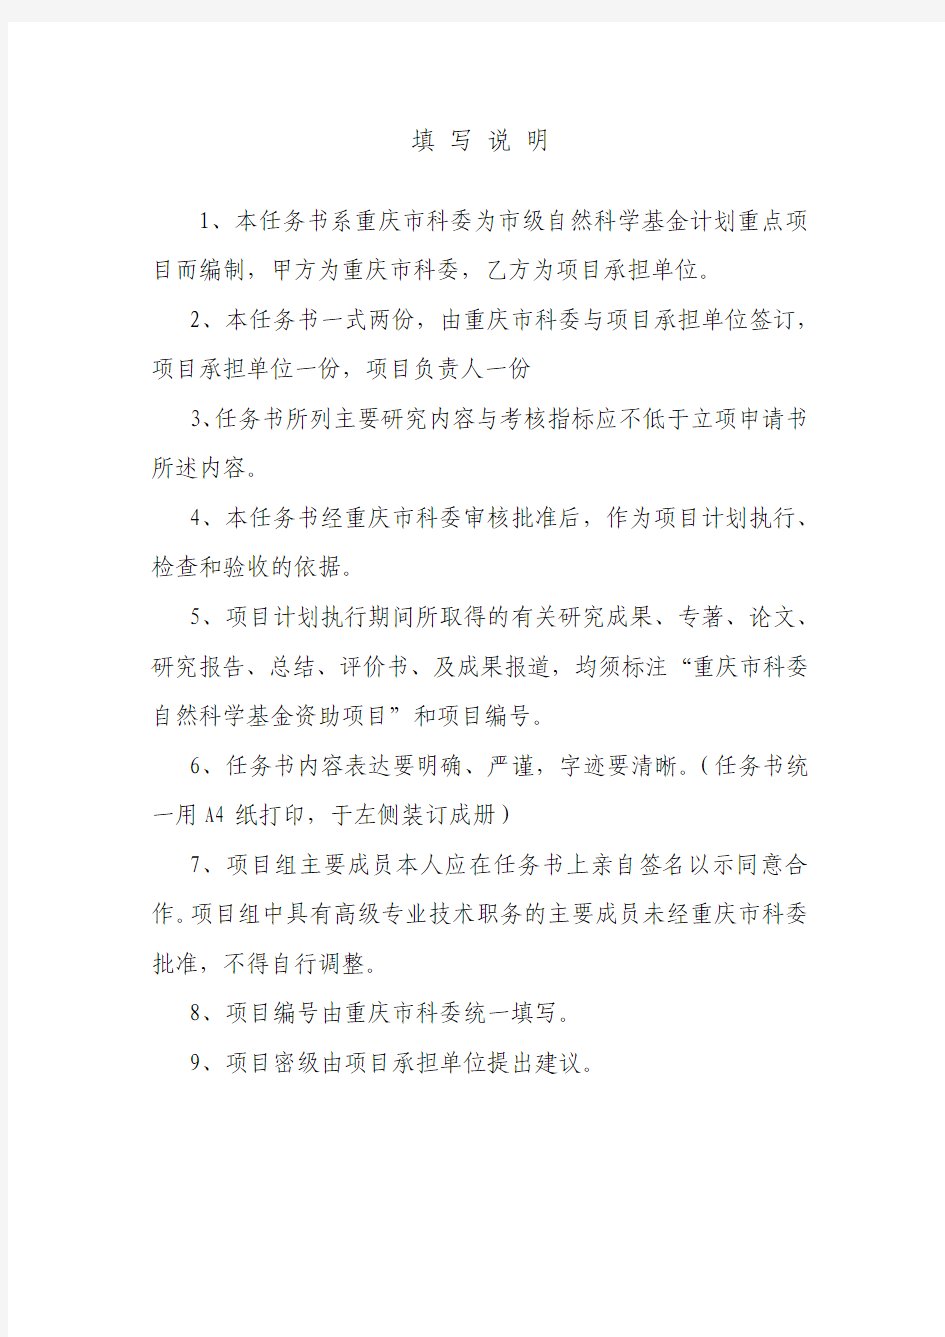 (重庆理工大学)重庆市自然科学基金计划重点项目任务书